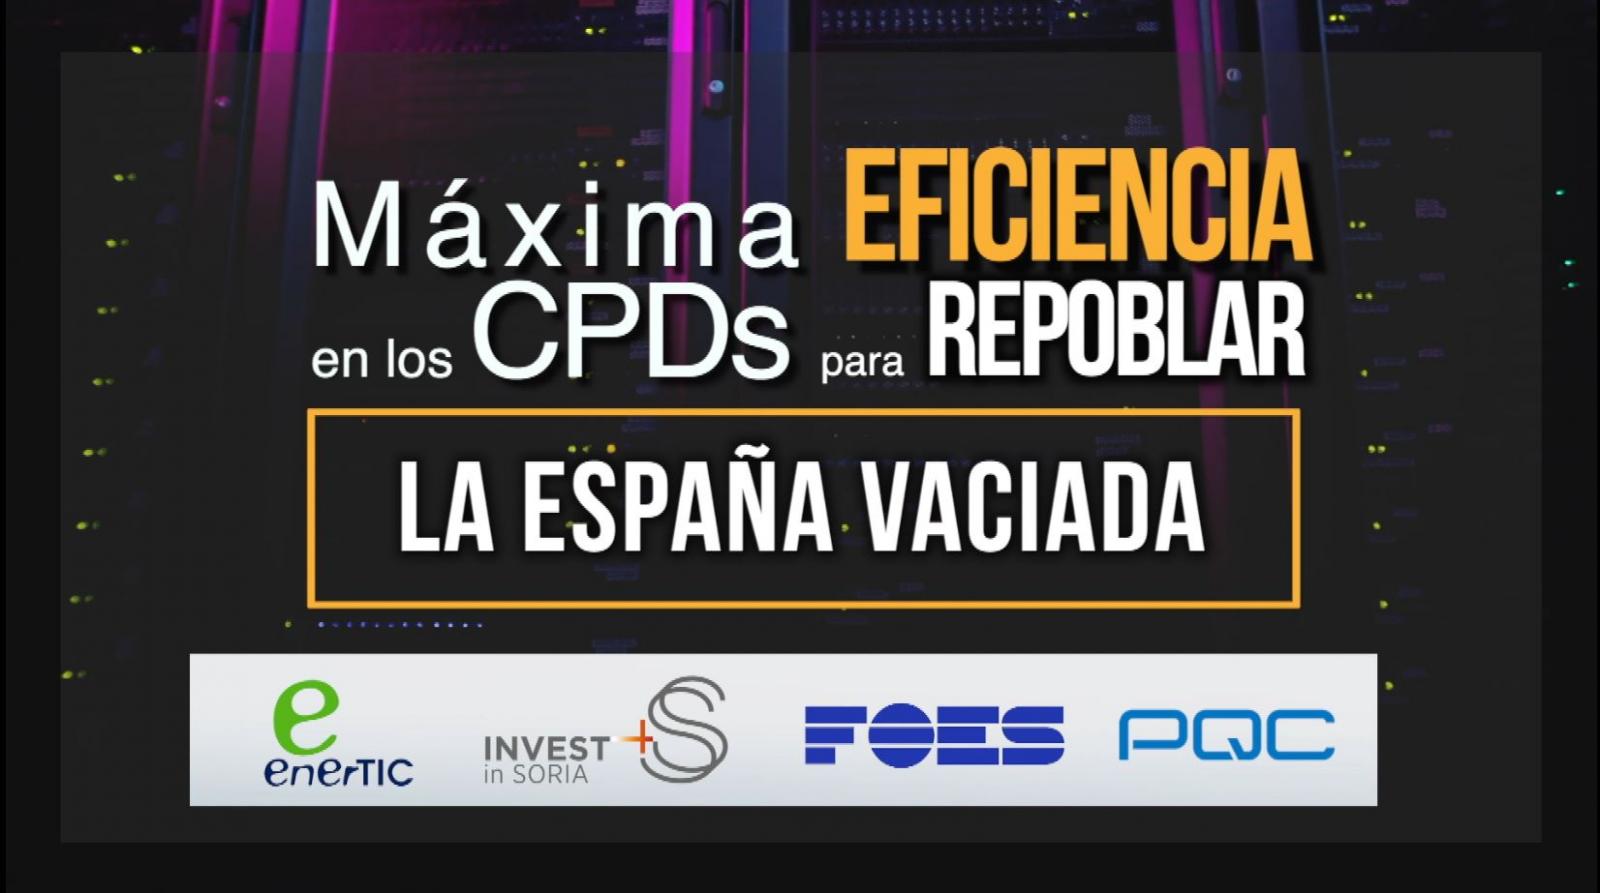 Máxima eficiencia en los CPDs para repoblar la España Vaciada